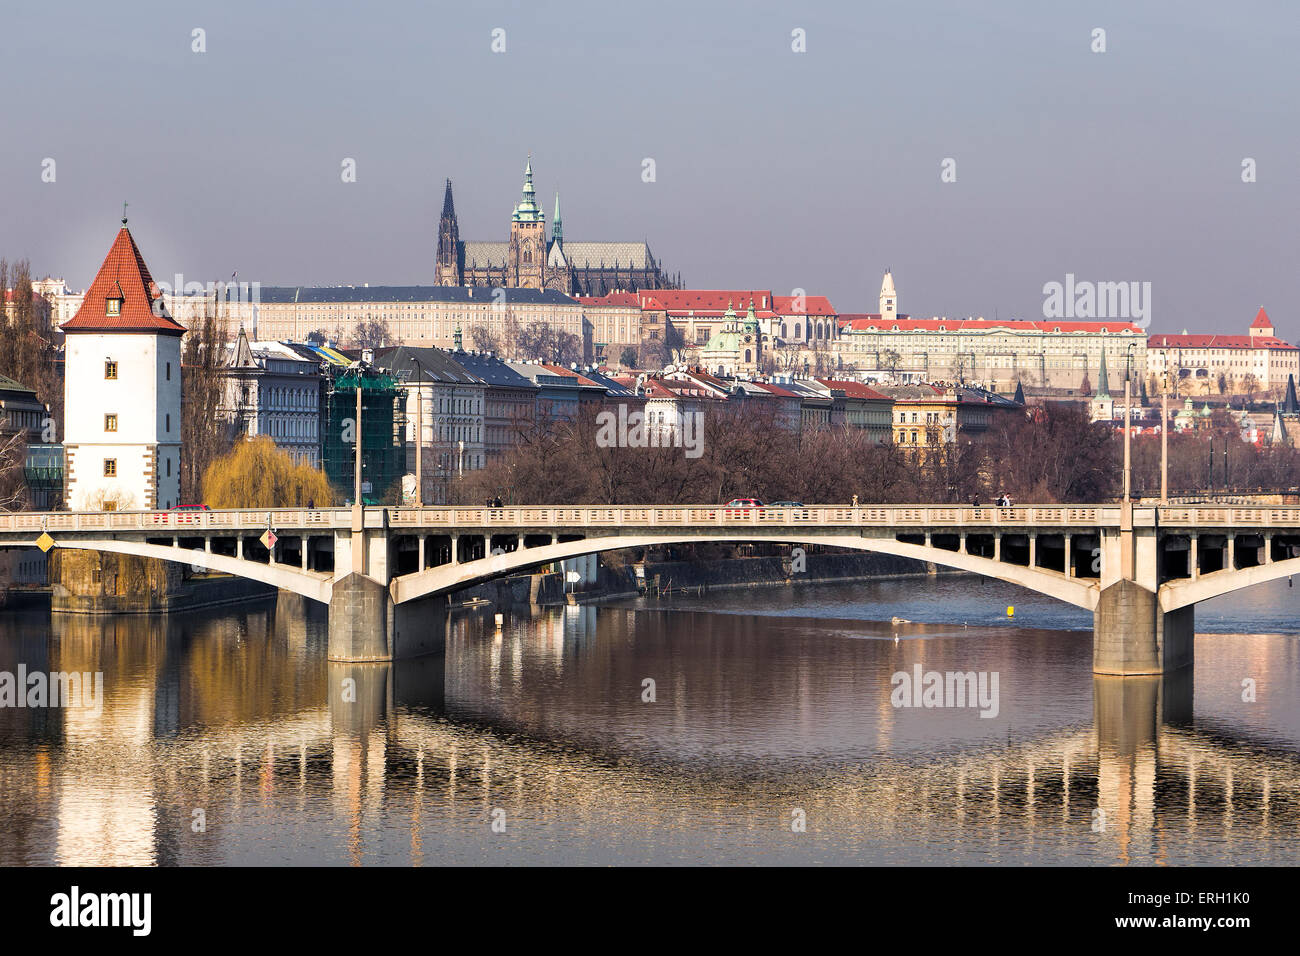 Panorama de Prague et du pont avec la réflexion sur la rivière Vltava. Concept de début du printemps pour visiter cette magnifique ville historique Banque D'Images